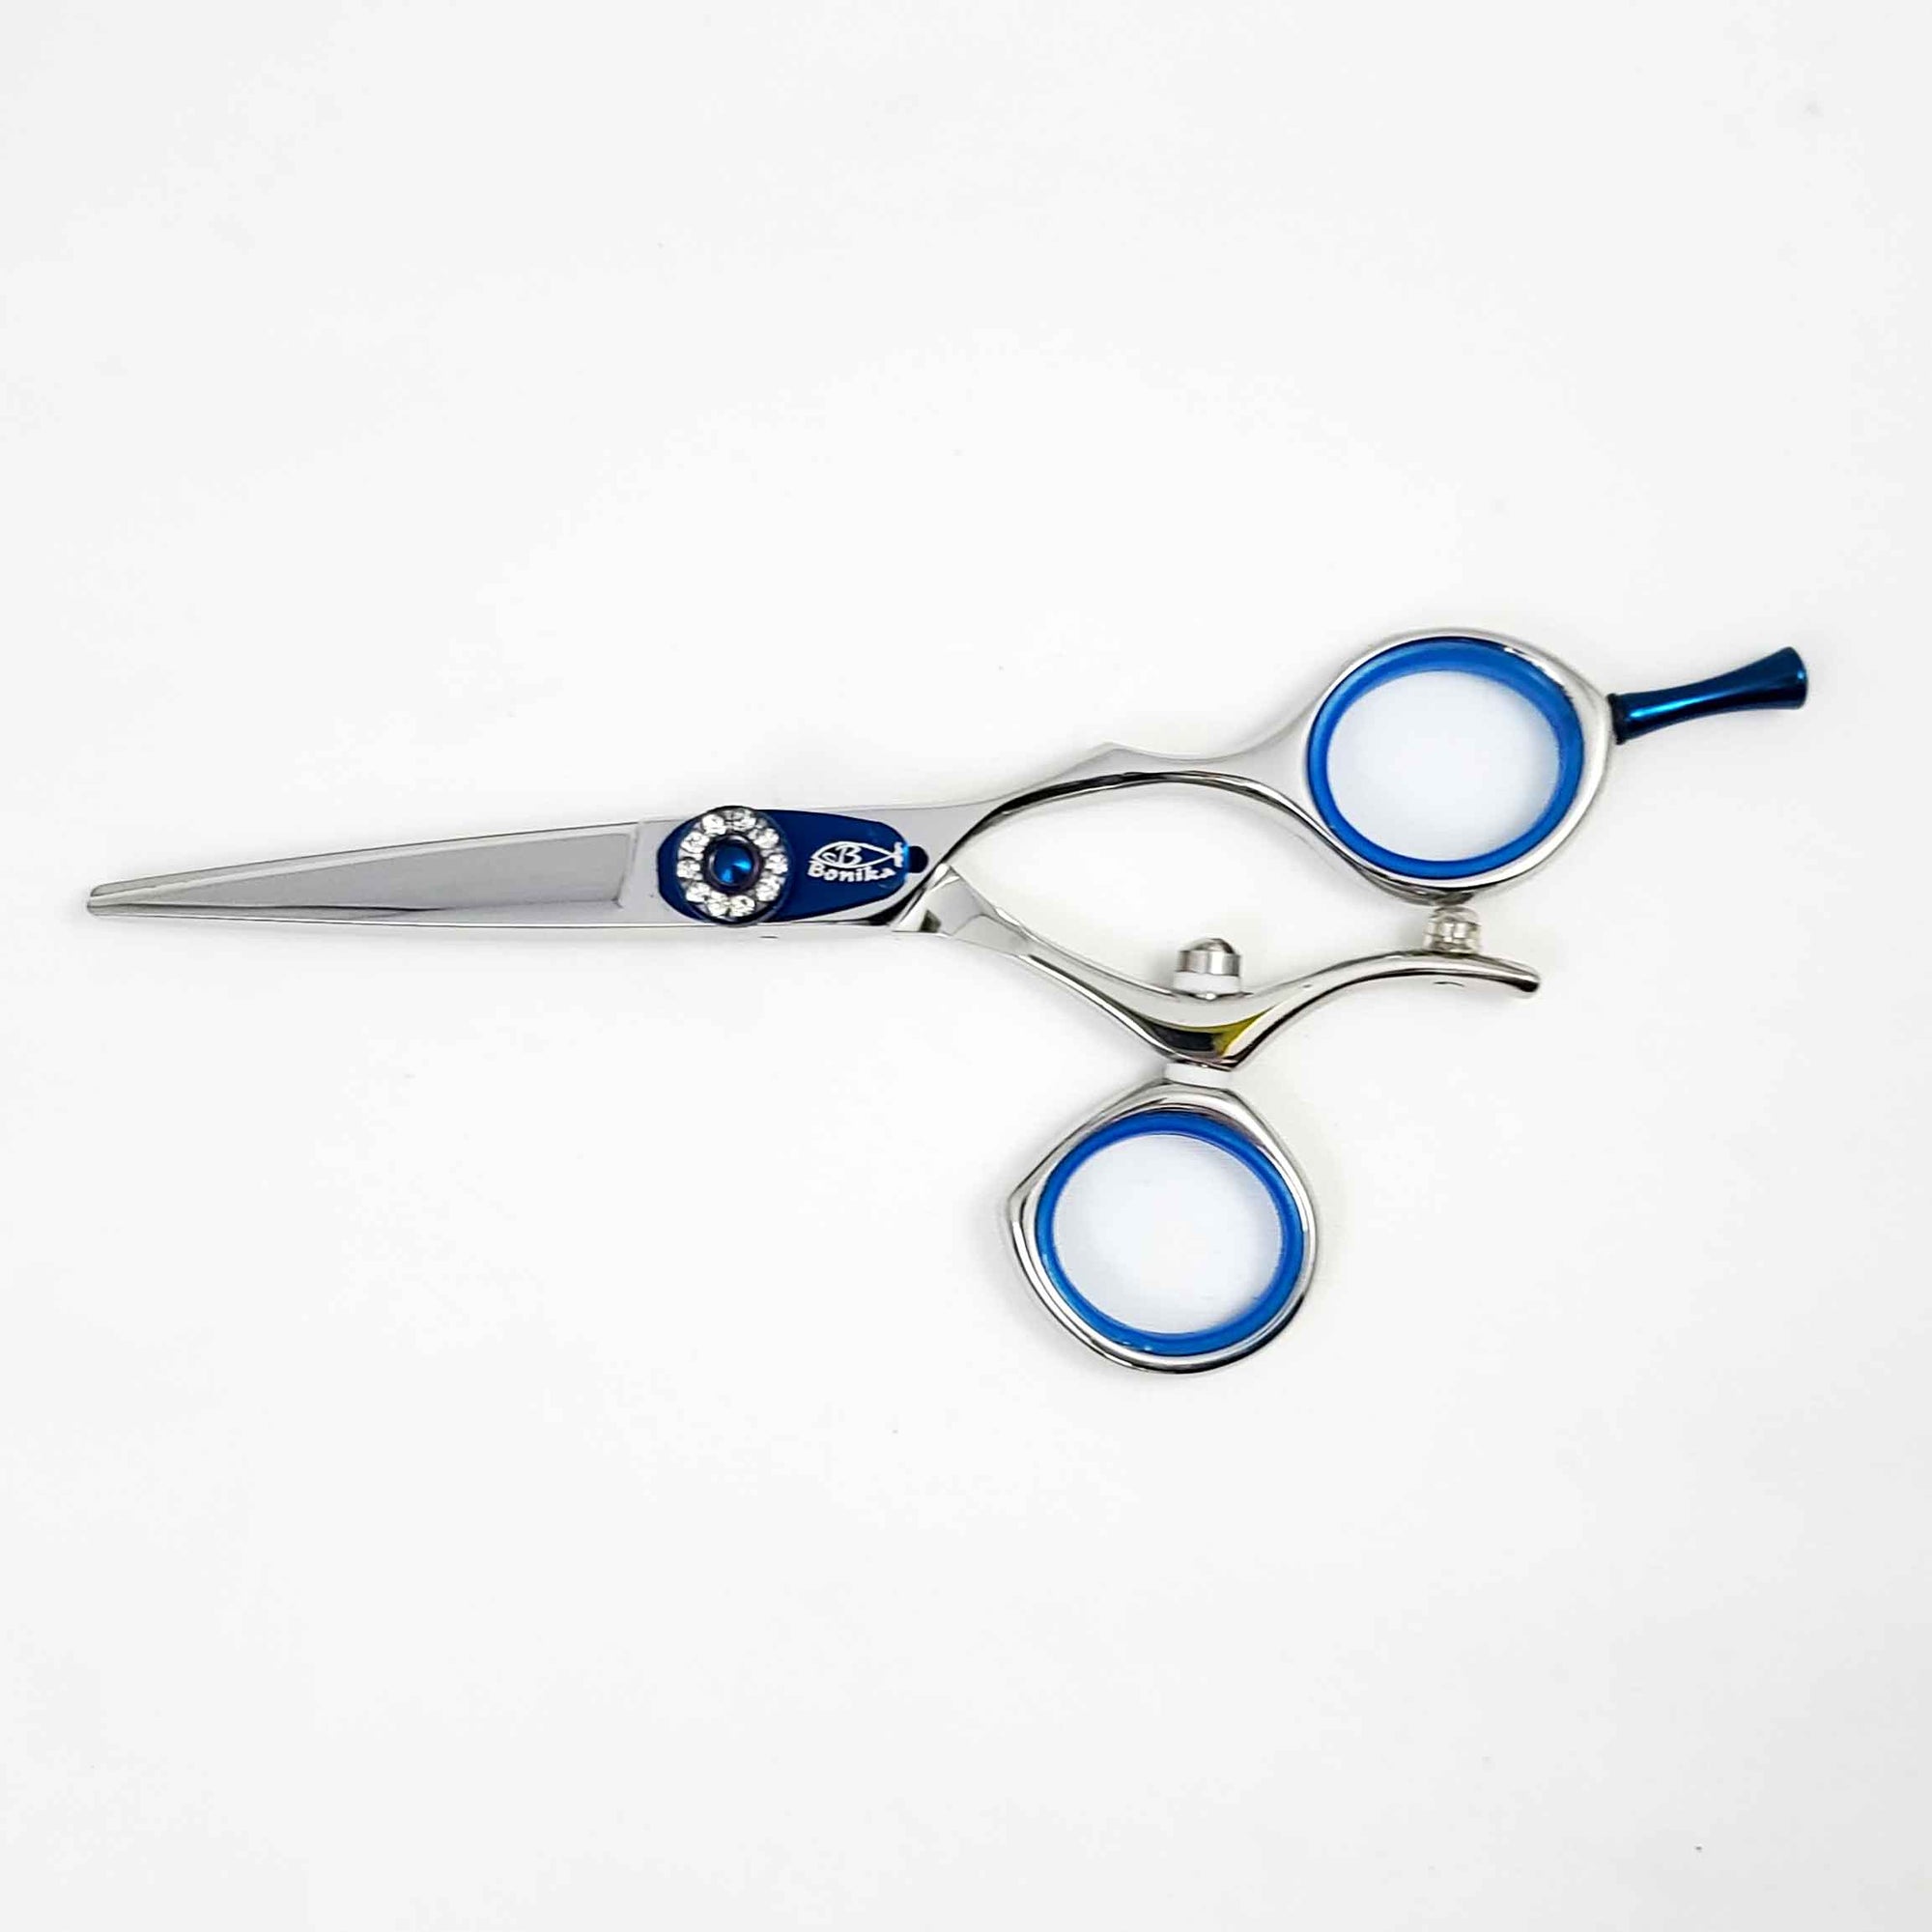 Shree Shyam™ U-shaped Yarn cutting scissors Yarn Scissors